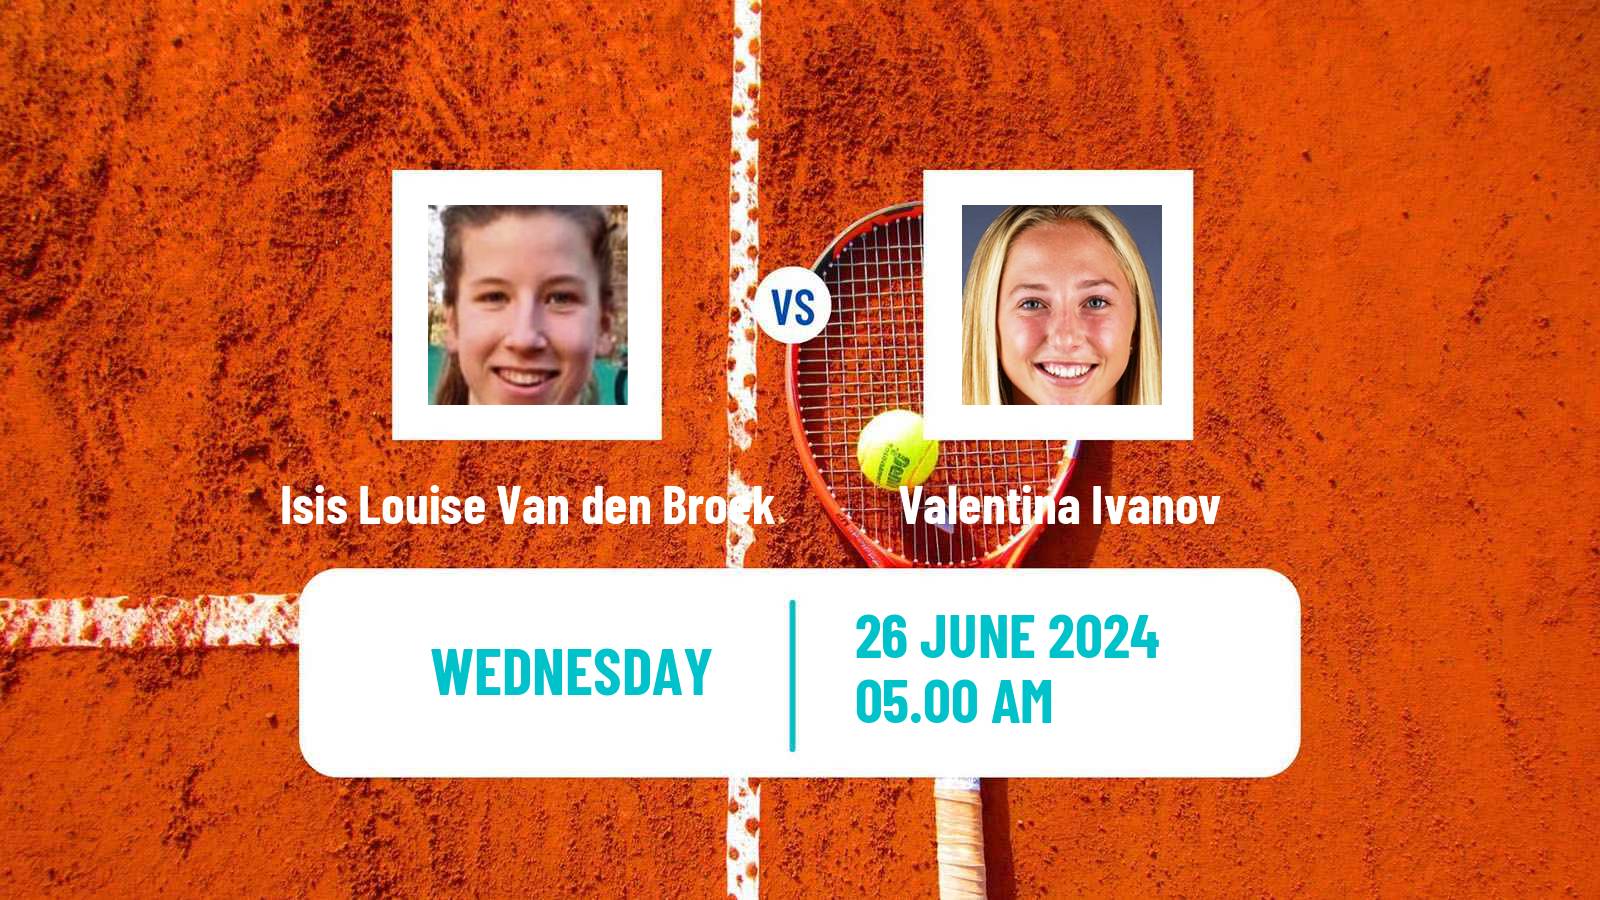 Tennis ITF W15 Alkmaar Women Isis Louise Van den Broek - Valentina Ivanov